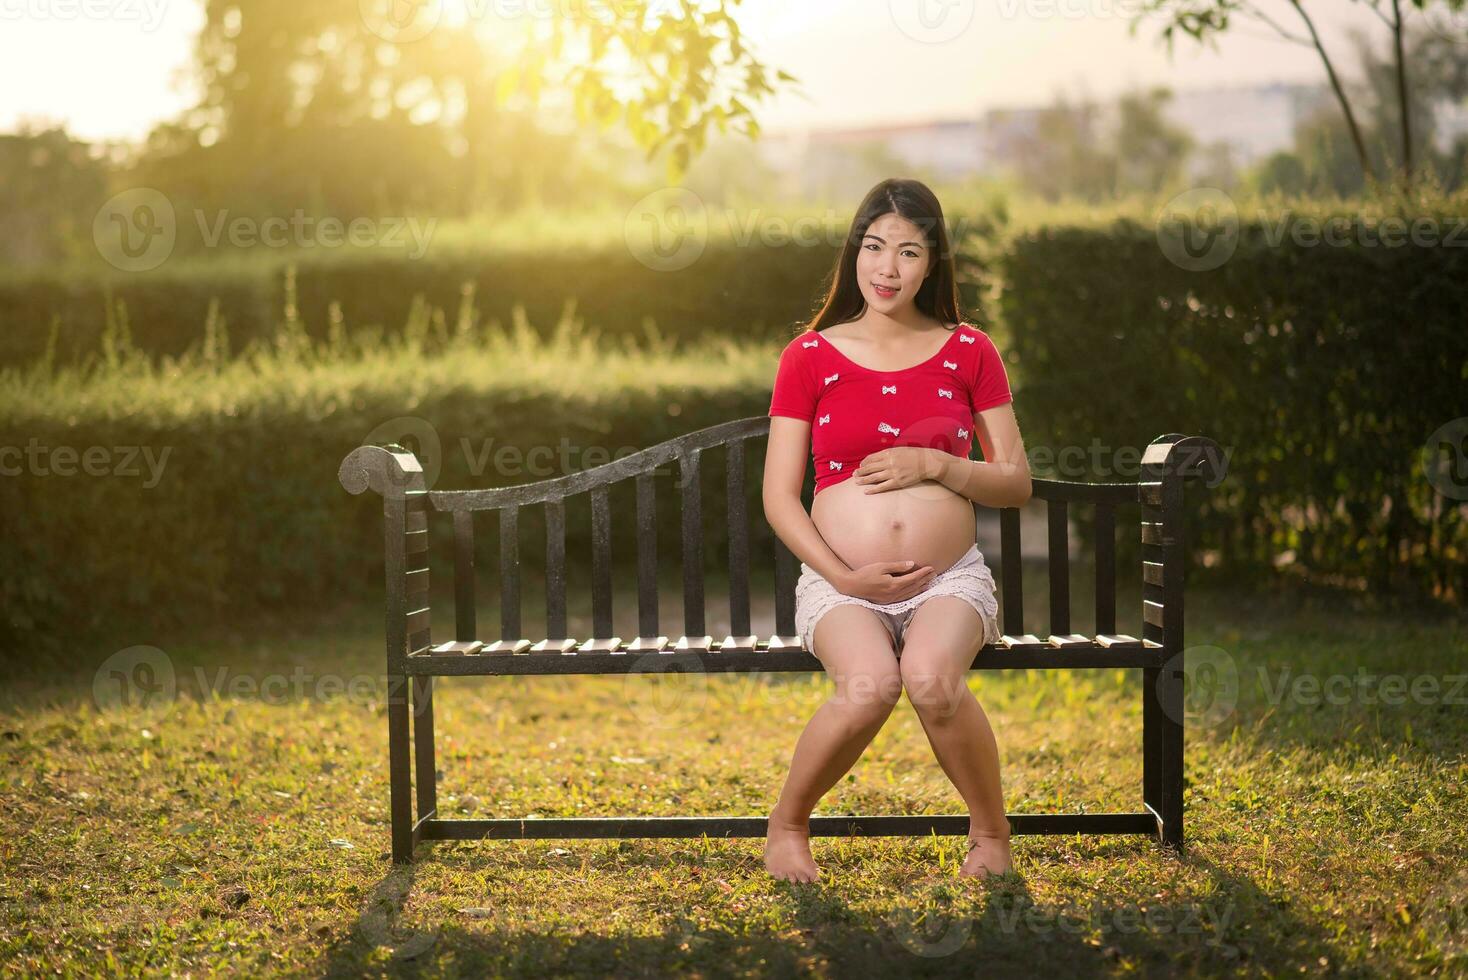 immagine di una donna incinta che si tocca il ventre con le mani foto